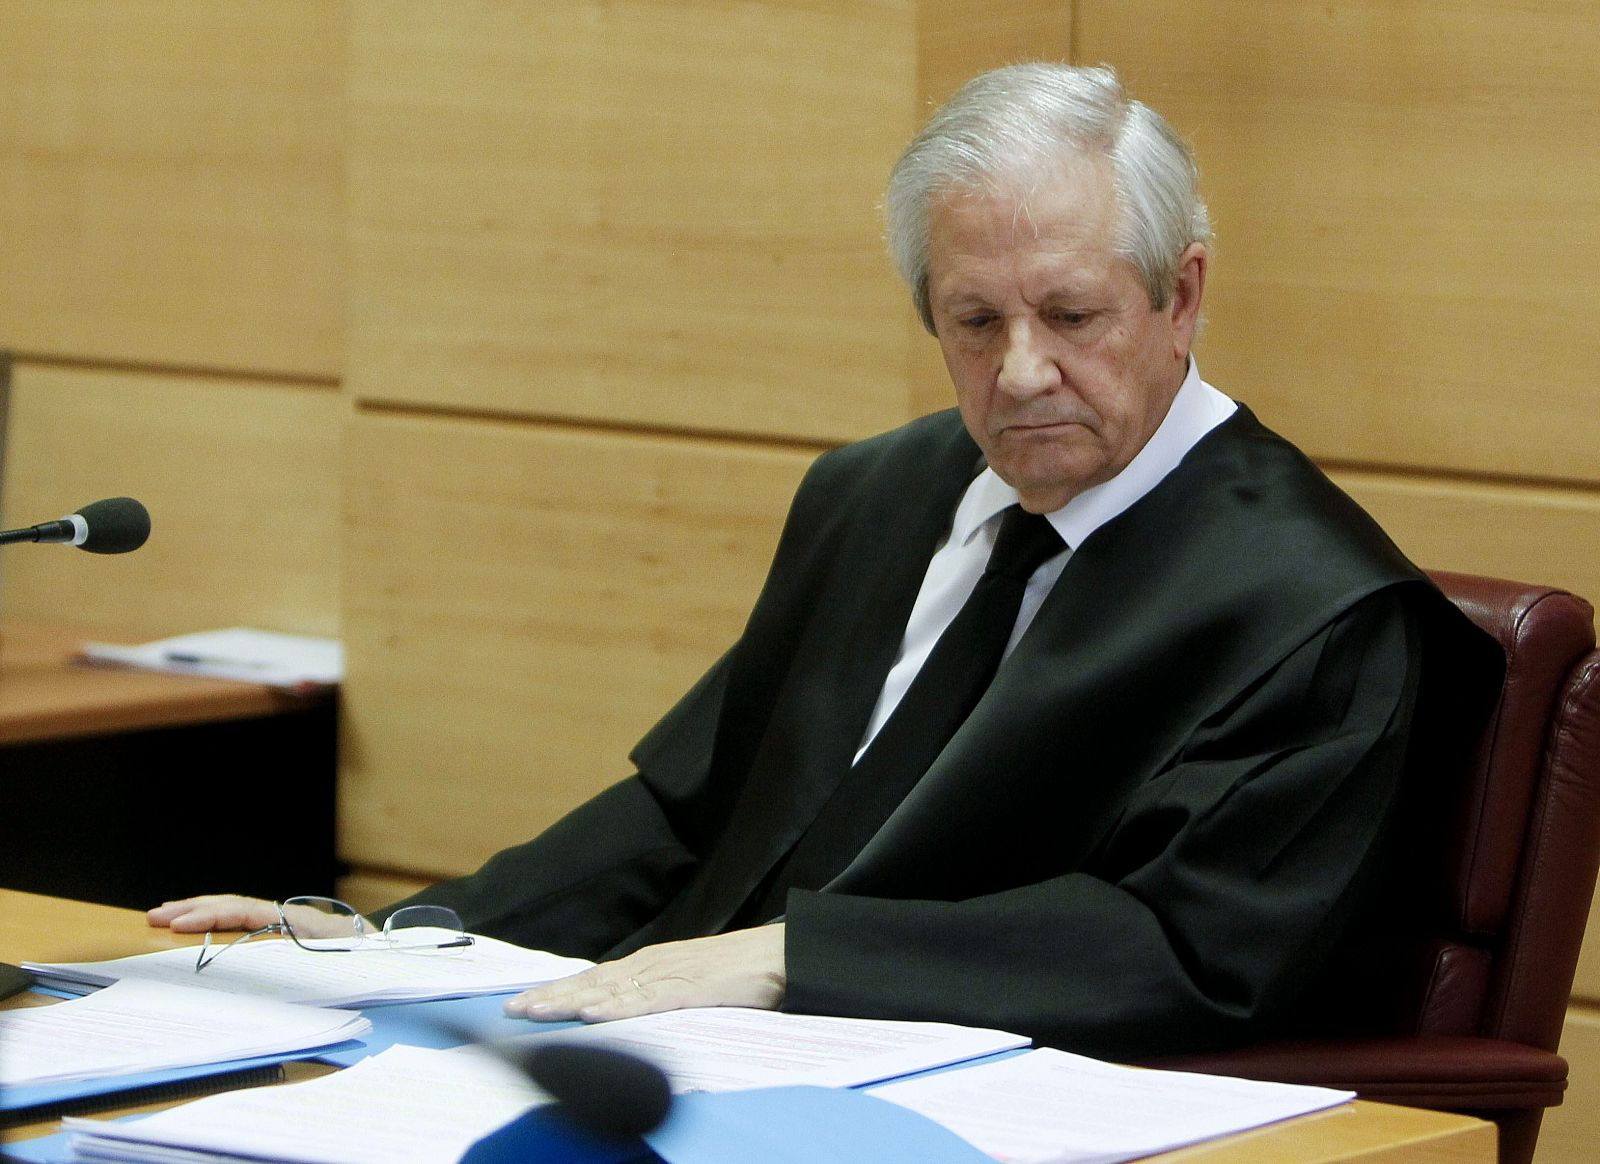 La sección cuarta de la Sala de lo Penal de la Audiencia Nacional ha revisado este jueves la prisión provisional que decretó el juez del caso Gürtel.